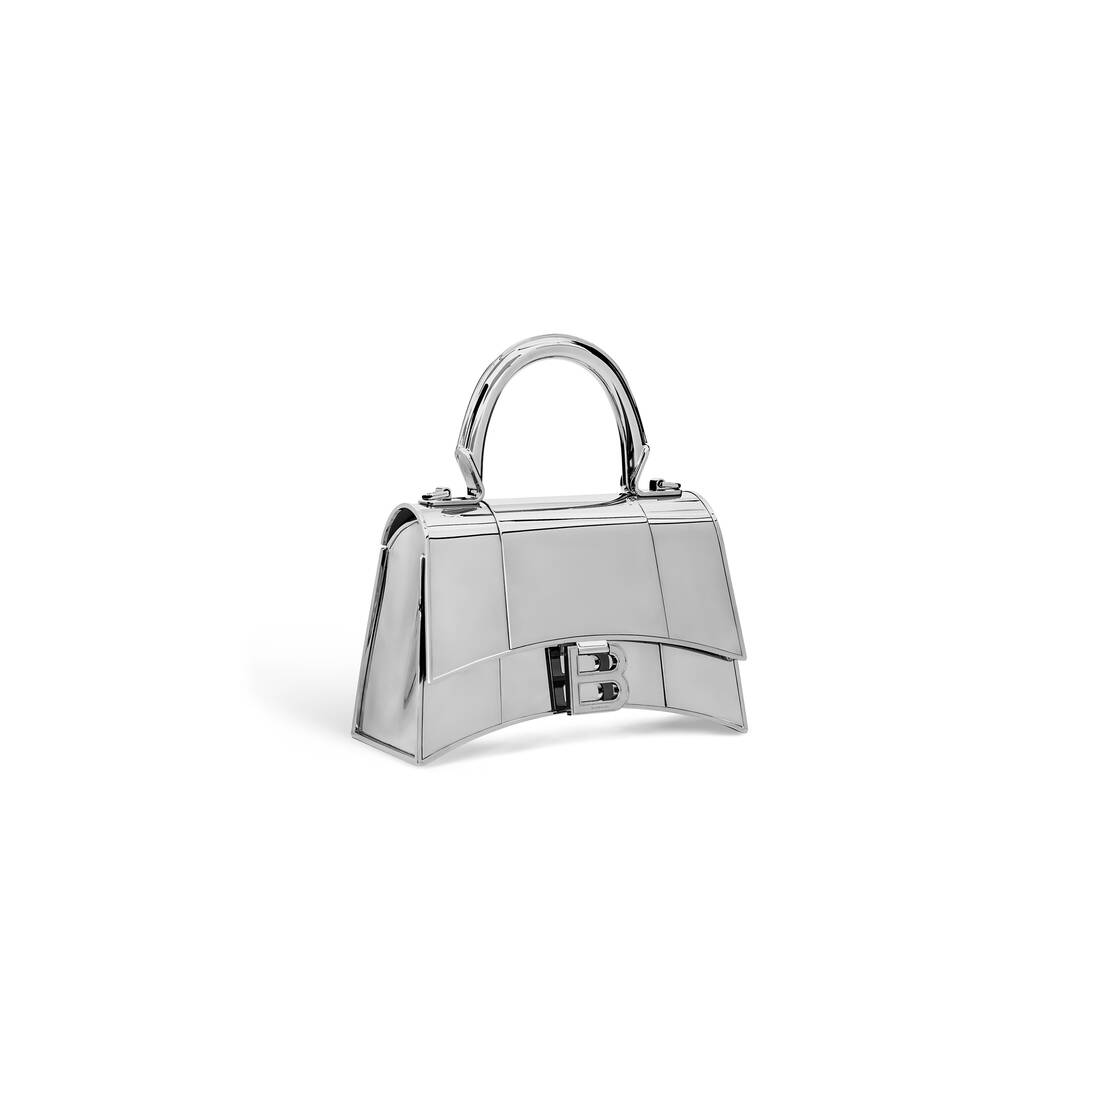 Women's Hourglass Metal Xs Handbag in Silver